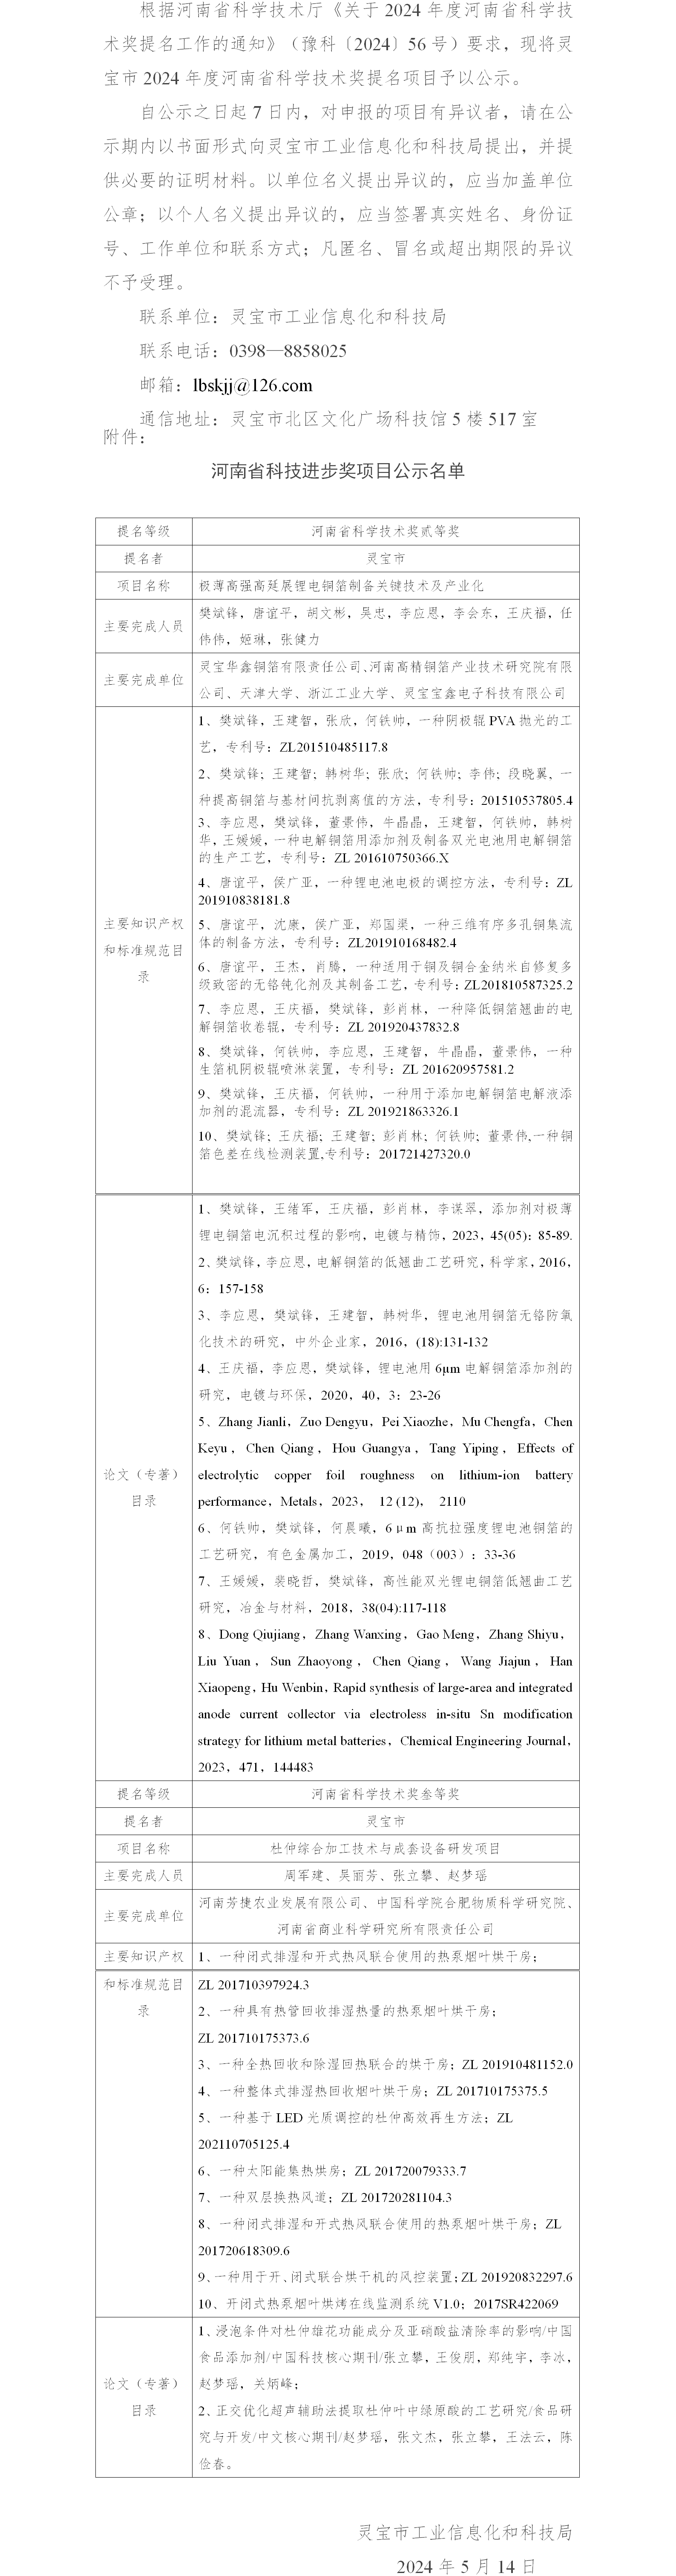 灵宝市2024年度河南省科学技术奖提名项目公示(1)_01.png